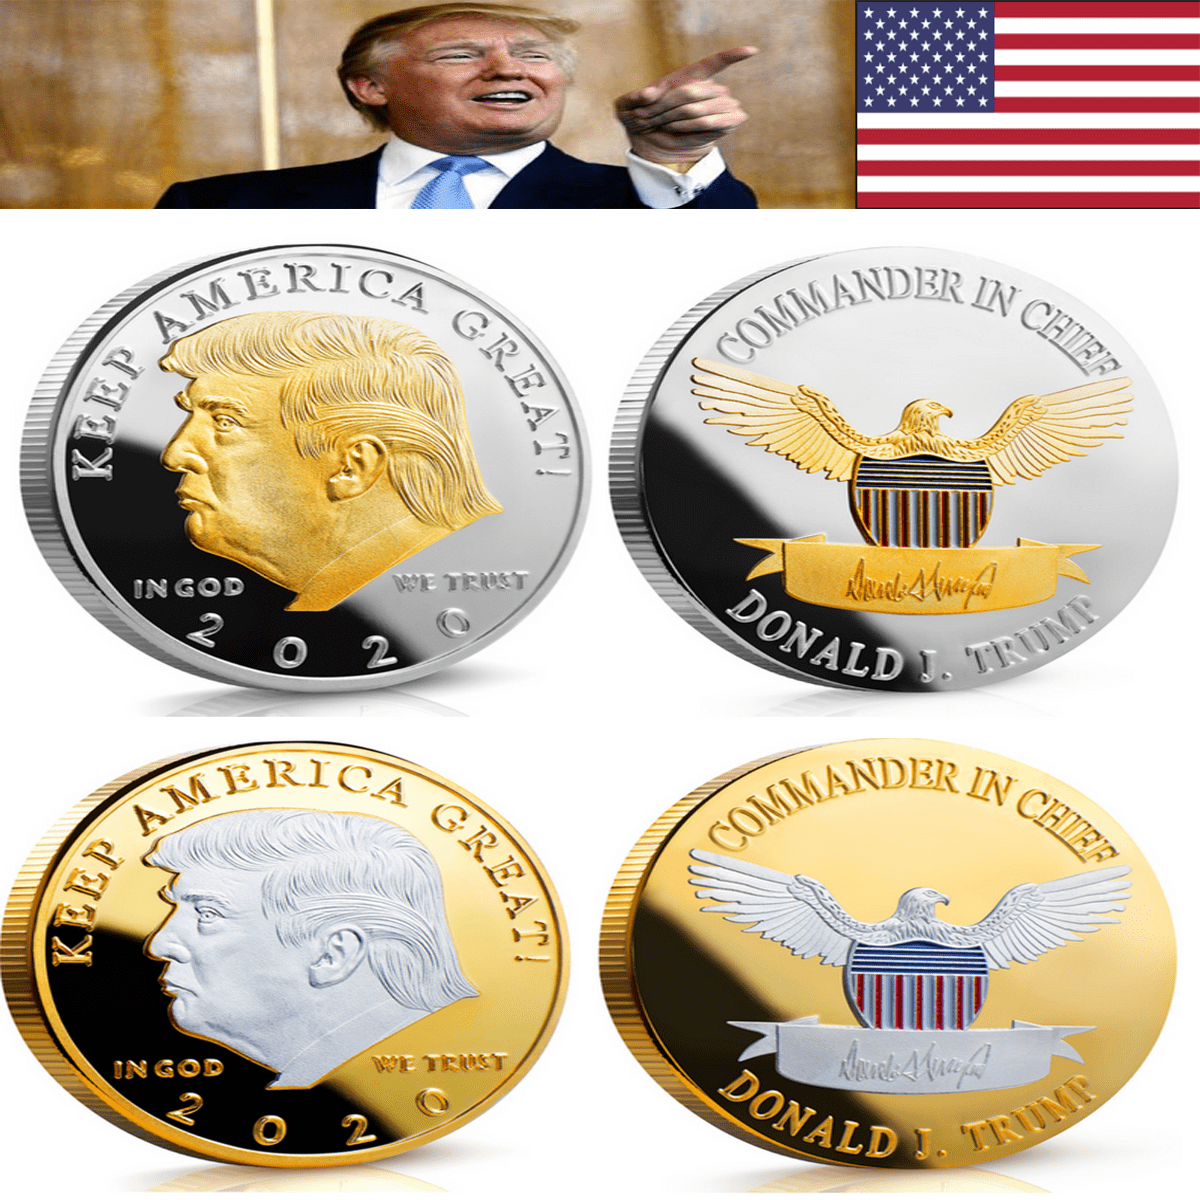 2020 President Donald Trump Gold & Silver Plated EAGLE Commemorative Coin #xvv 